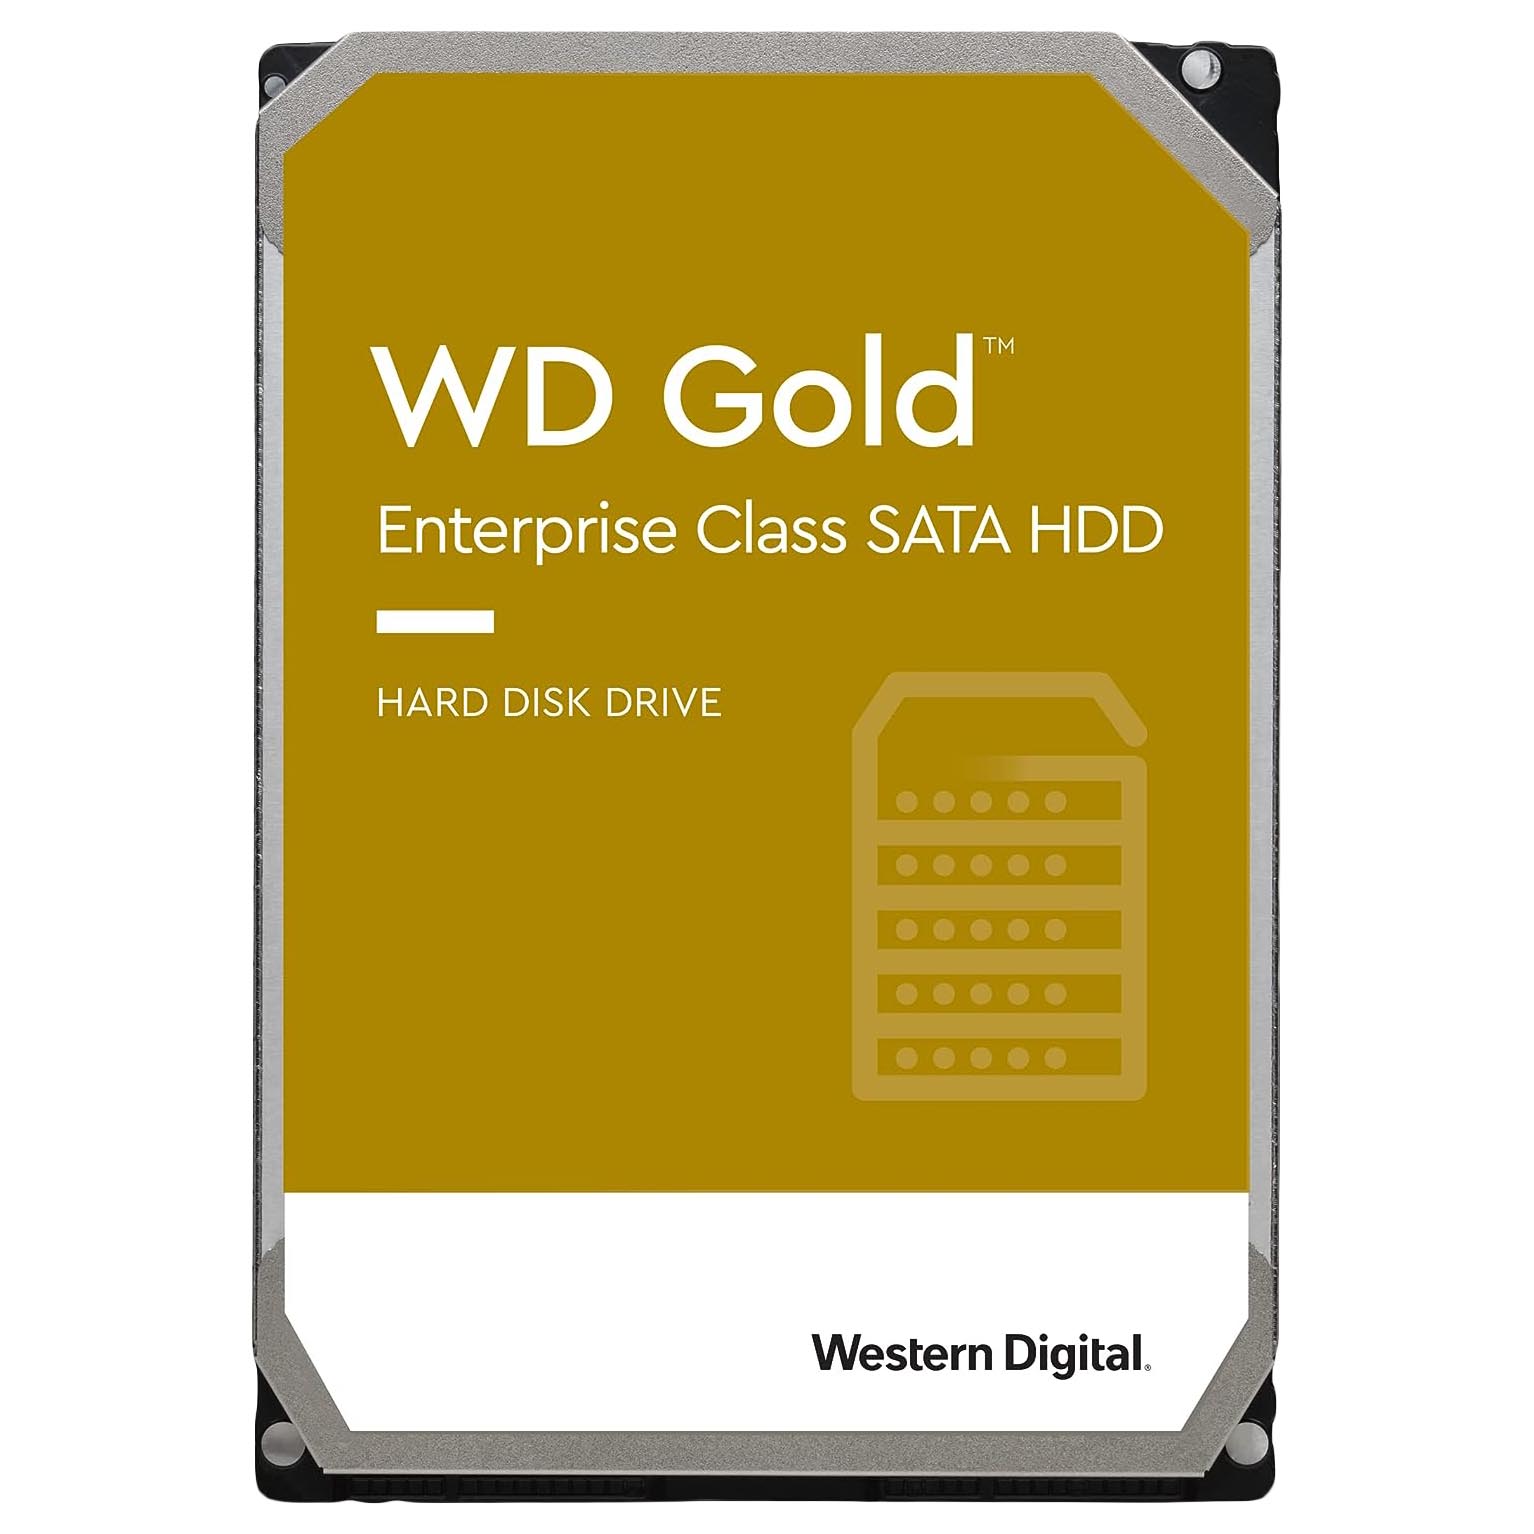 Внутренний жесткий диск Western Digital WD Gold Enterprise Class, WD102VRYZ, 10Тб внутренний жесткий диск western digital gold 3 5 8 тб wd8004fryz